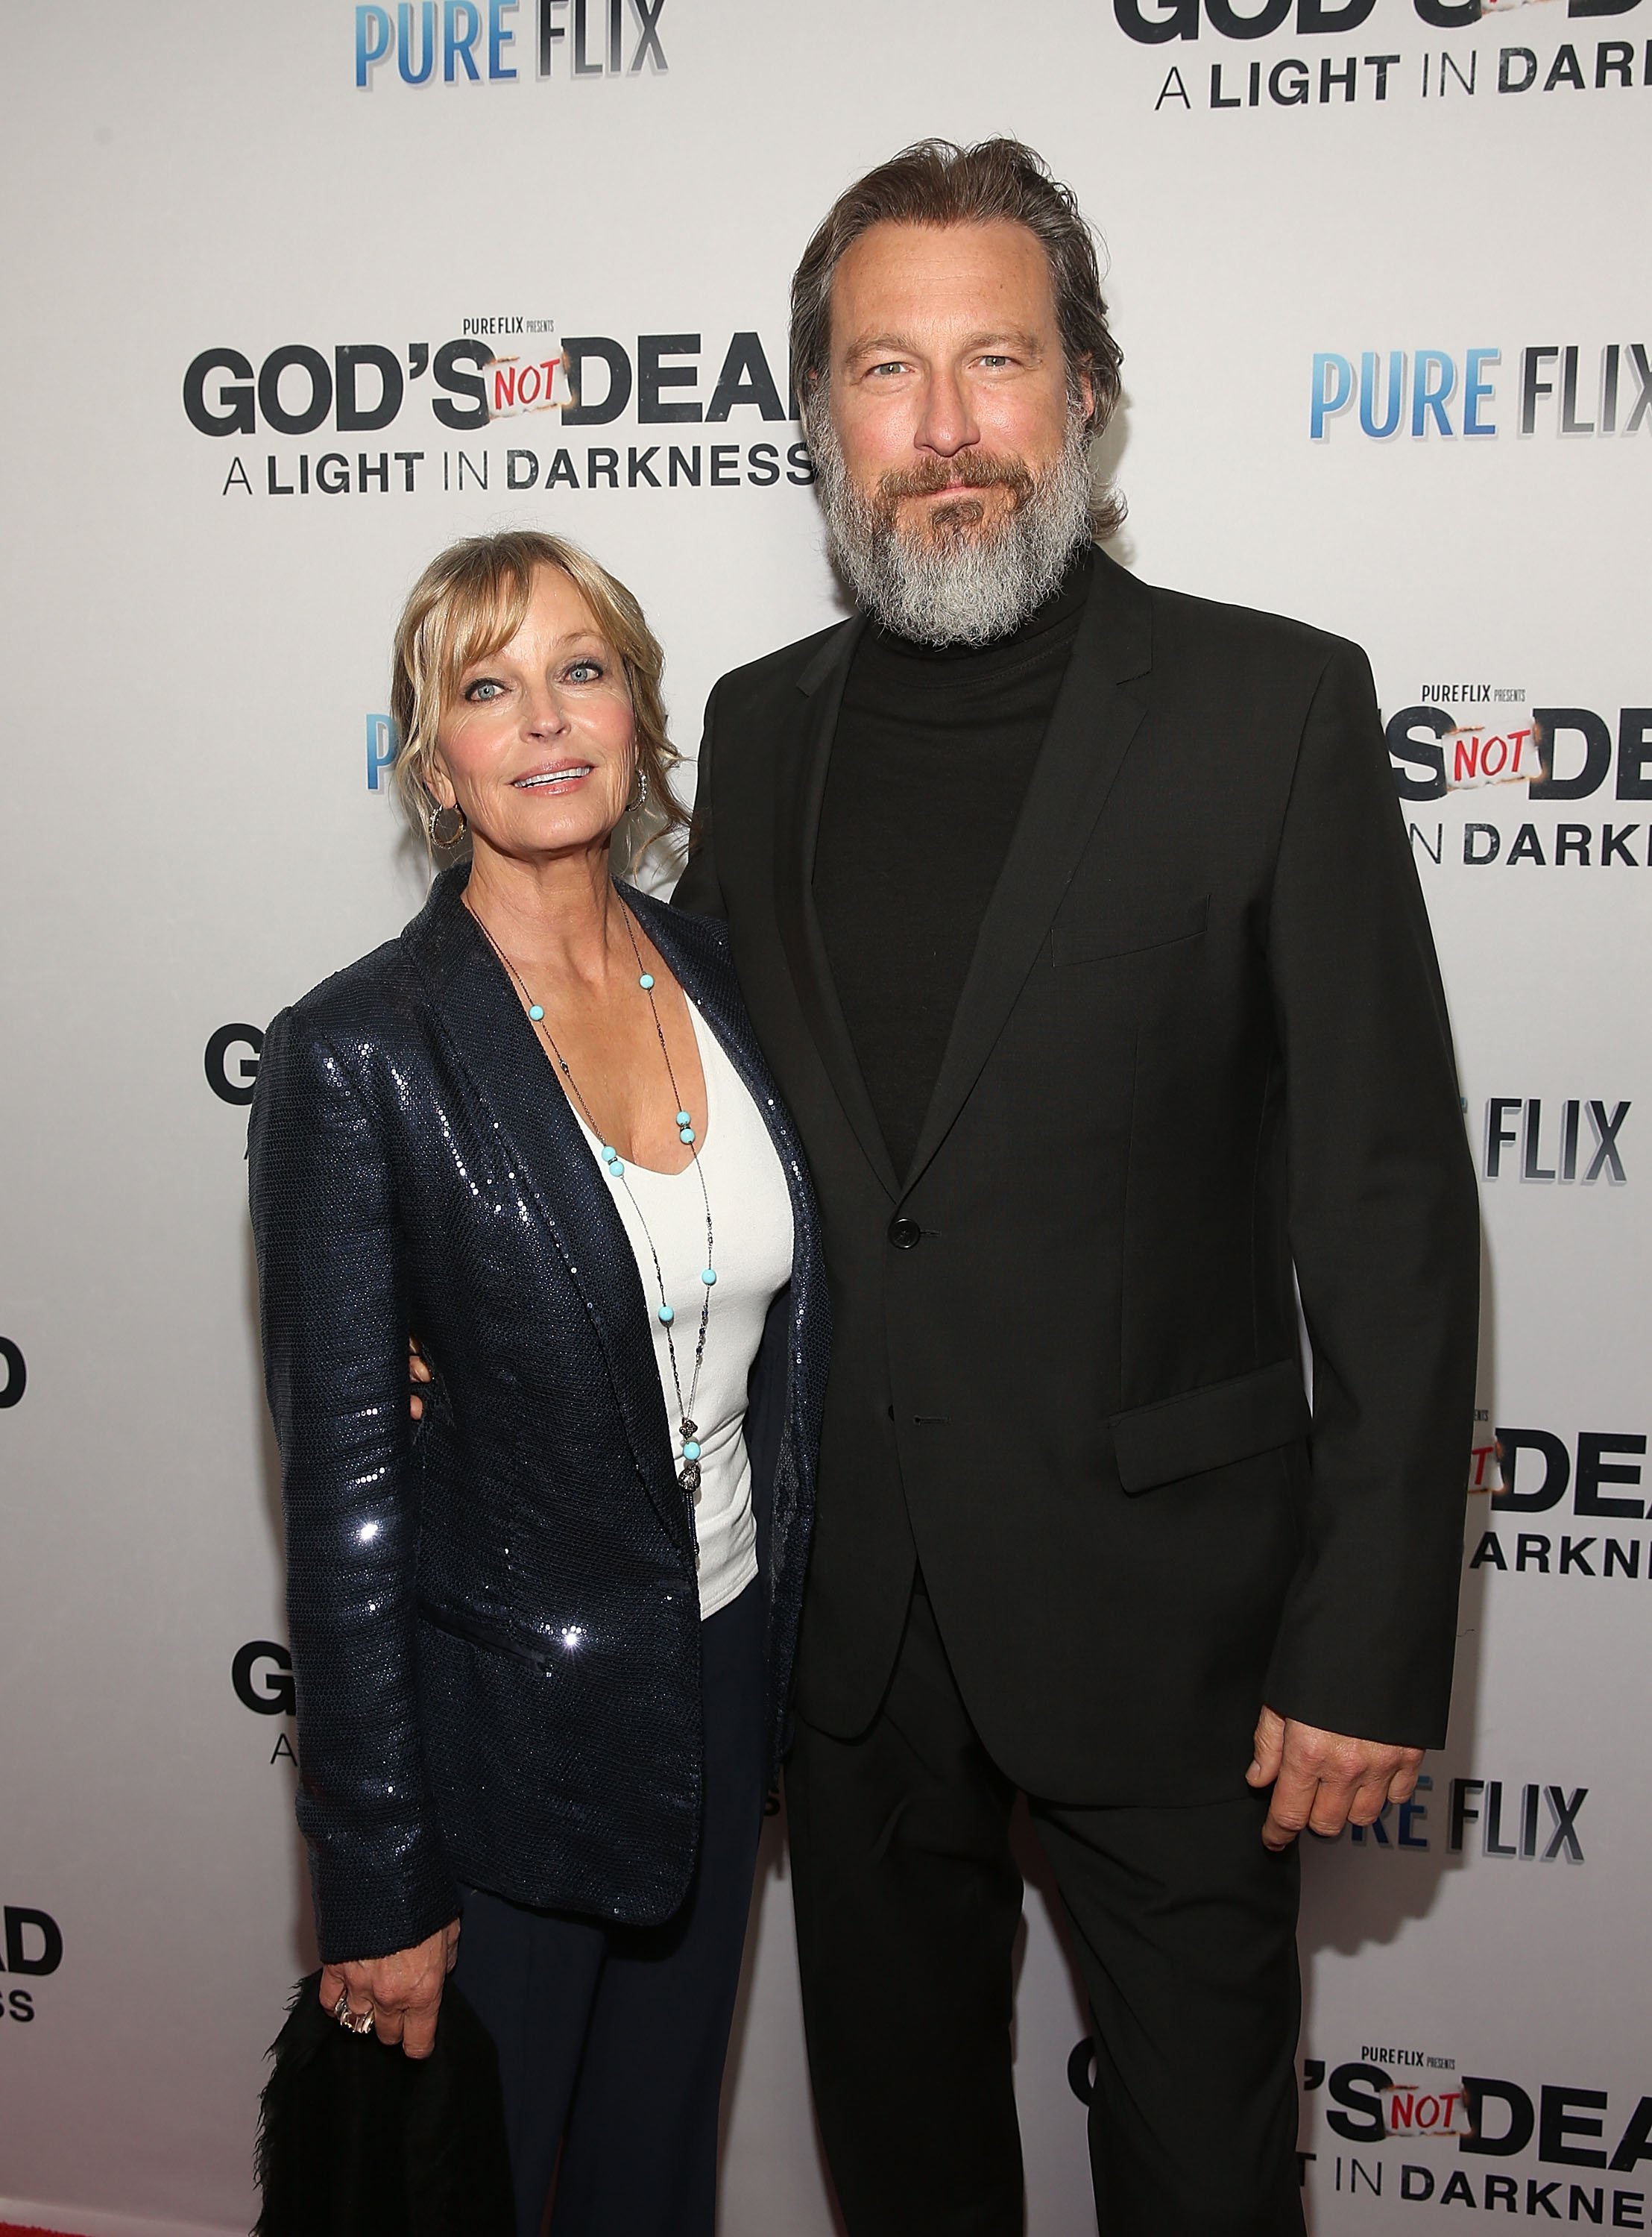 Οι ηθοποιοί Bo Derek και John Corbett παρευρίσκονται στην πρεμιέρα του God's Not Dead: A Light in Darkness στις 20 Μαρτίου 2018 στο Λος Άντζελες της Καλιφόρνια |  Πηγή: Getty Images